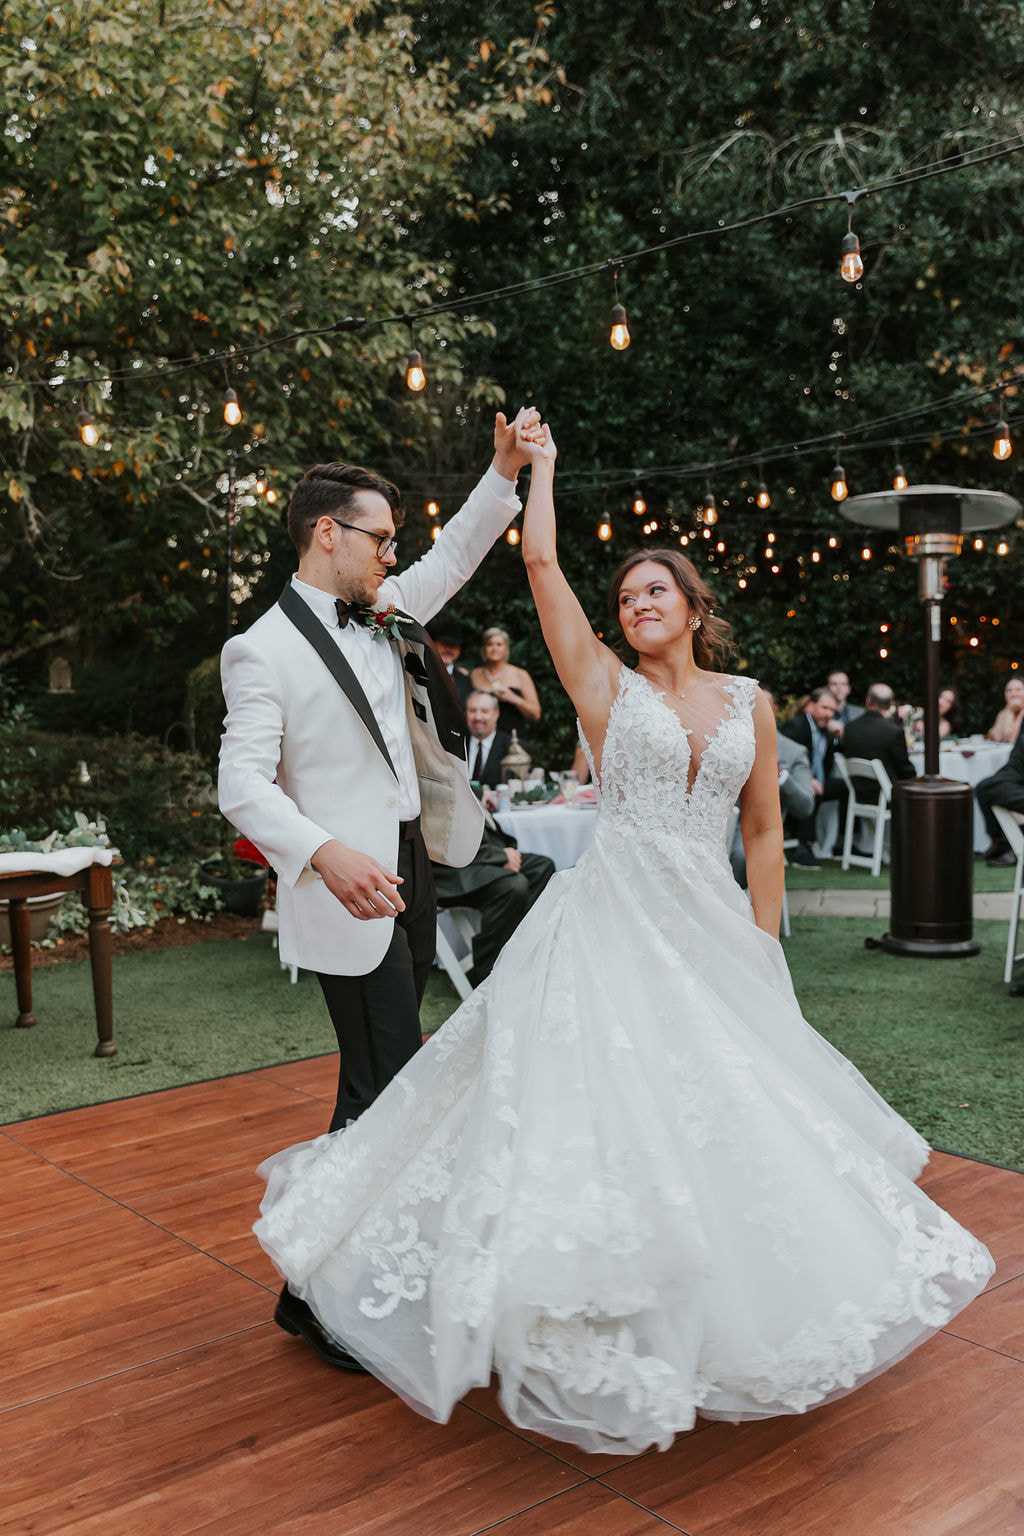 groom twirling bride on outdoor dance floor